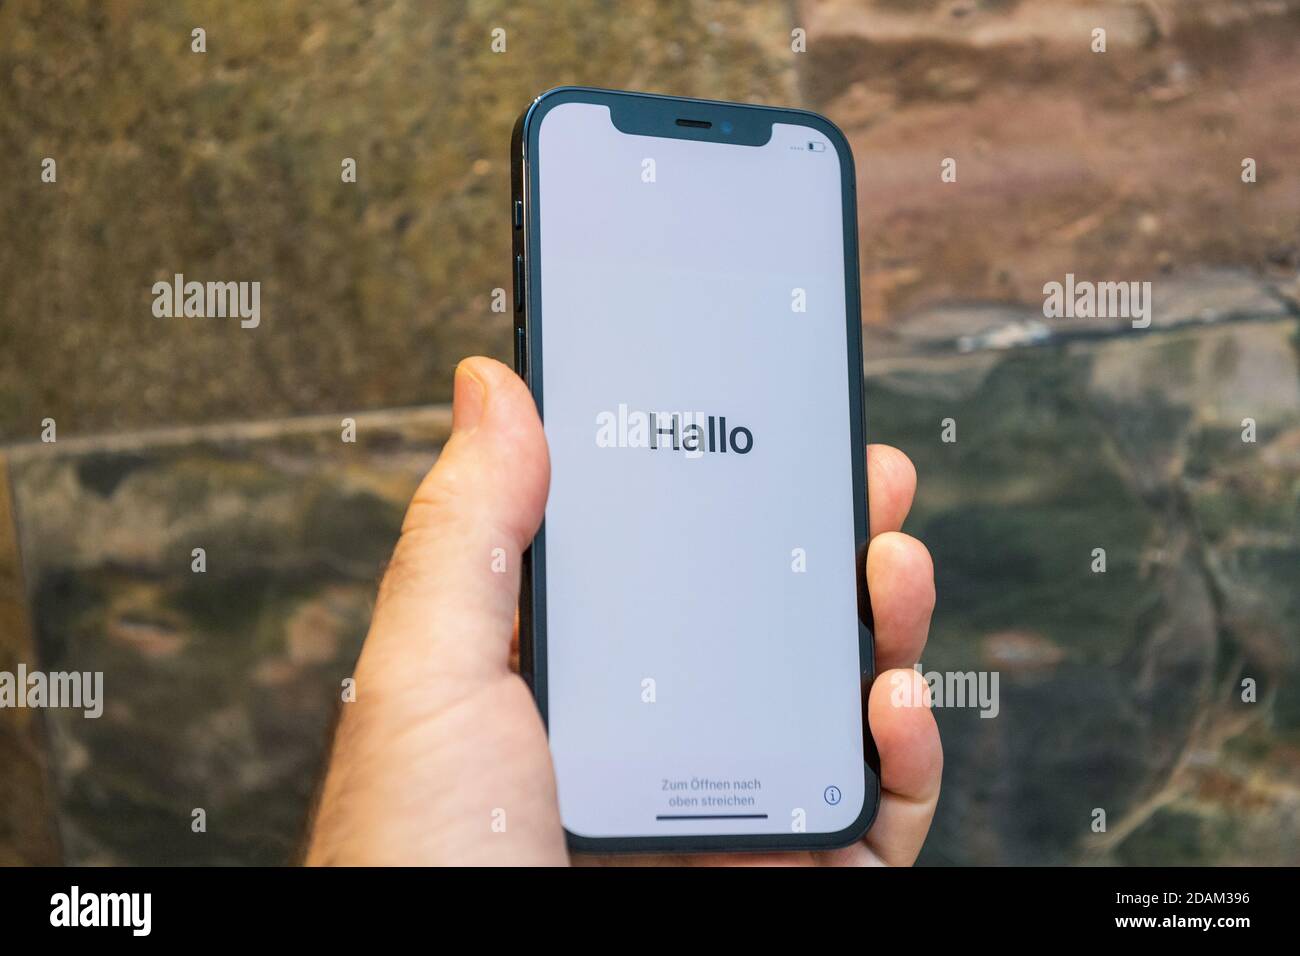 Paris, Frankreich - 11. Nov 2020: Hallo deutsch Hallo Wort in als Mann Hand  hält neue iPhone 12 Pro Max 5G Smartphone-Modell von Apple Computers  Nahaufnahme von Pacific Blue Handy-Gerät während der